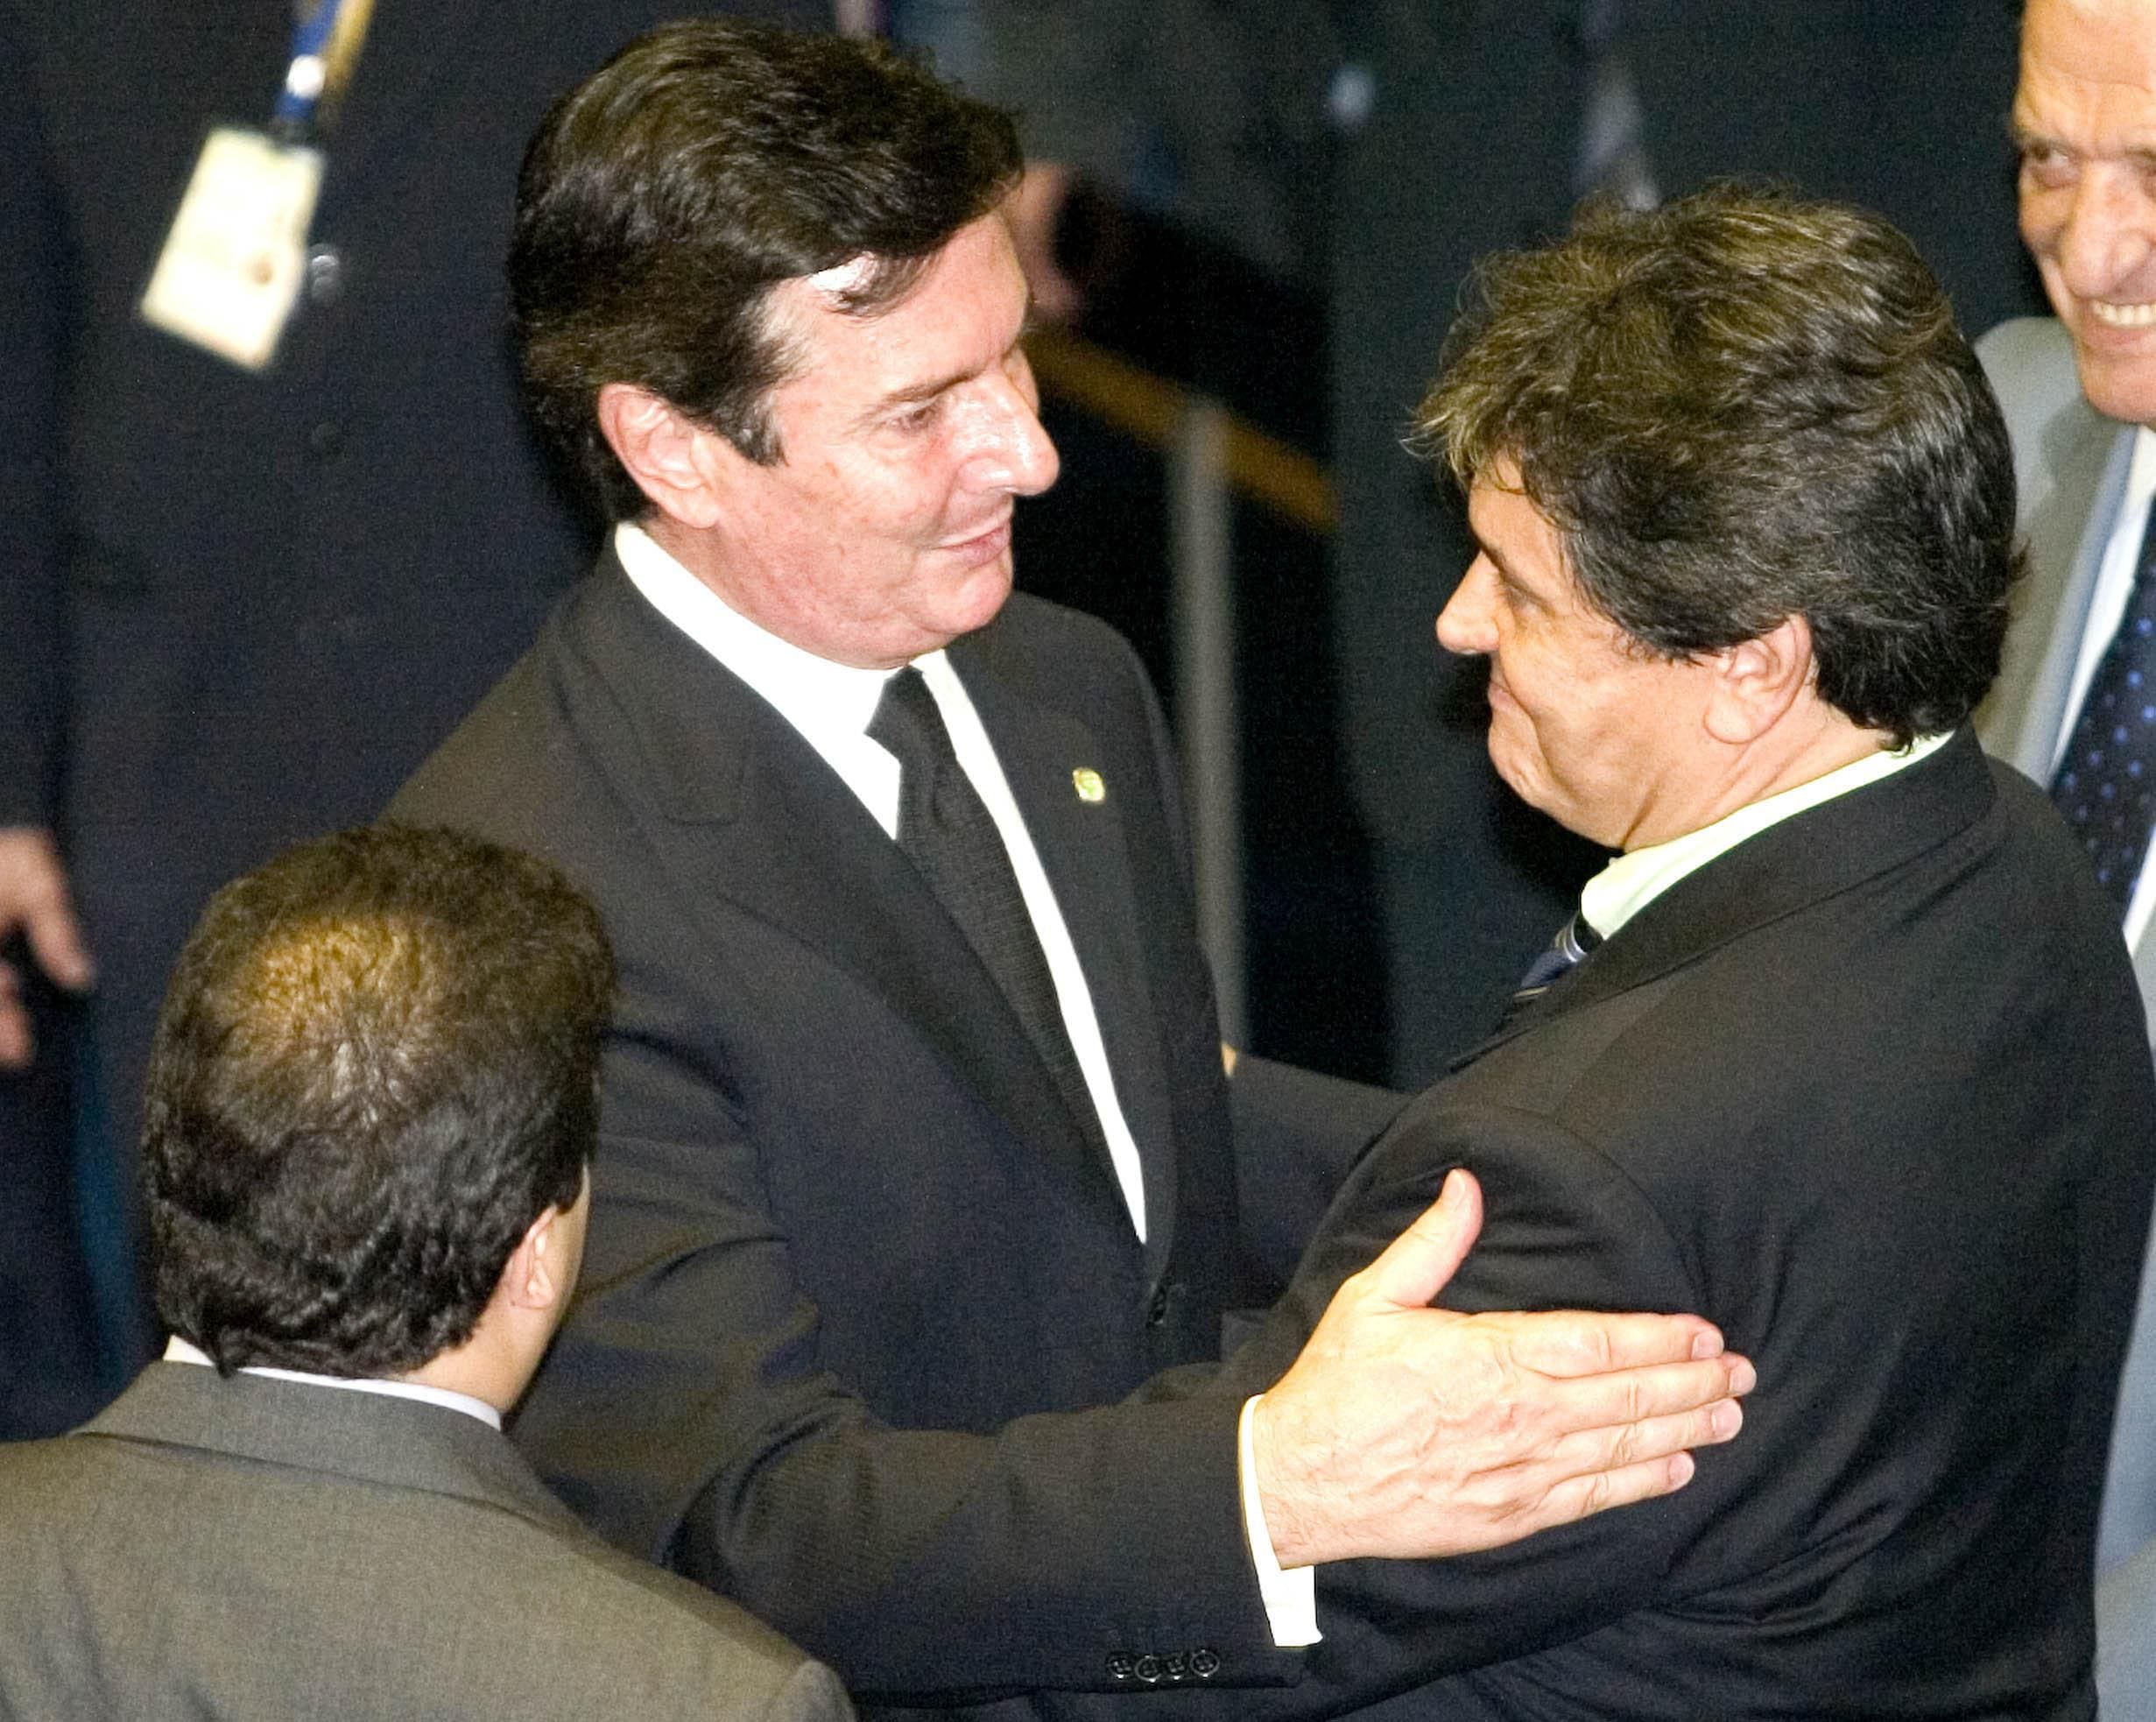 Primeiro presidente eleito nas eleições diretas pós-ditadura militar, <b>Fernando Collor</b> perdeu o controle do Congresso e sofreu impeachment após pressão da sociedade